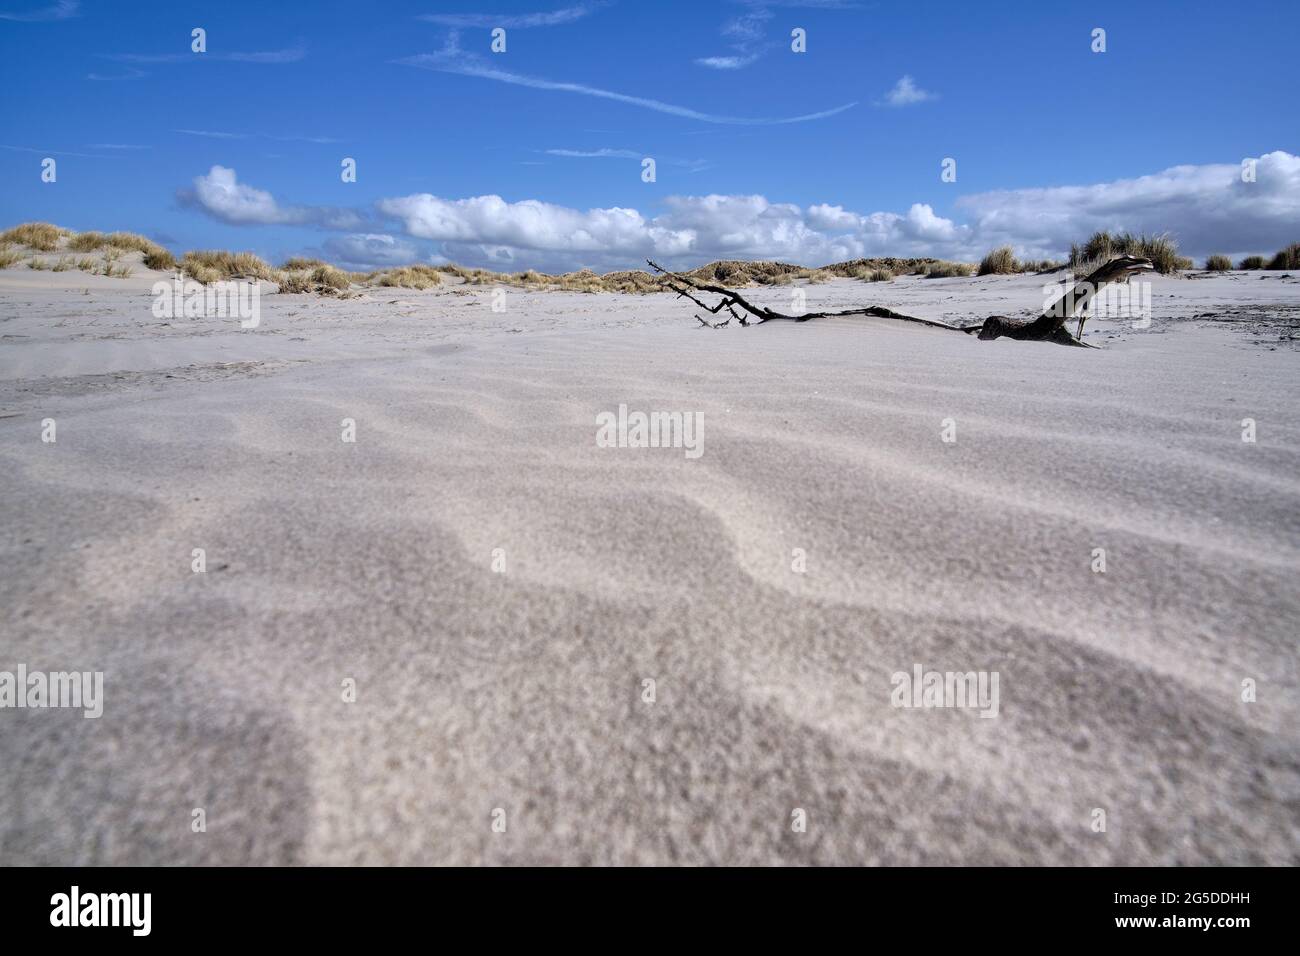 Dune olandesi con motivi di sabbia bianca, antico ramo di legno, erba da spiaggia sulla spiaggia con un cielo blu con nuvole bianche. Paesi Bassi, Ameland 2021 Foto Stock